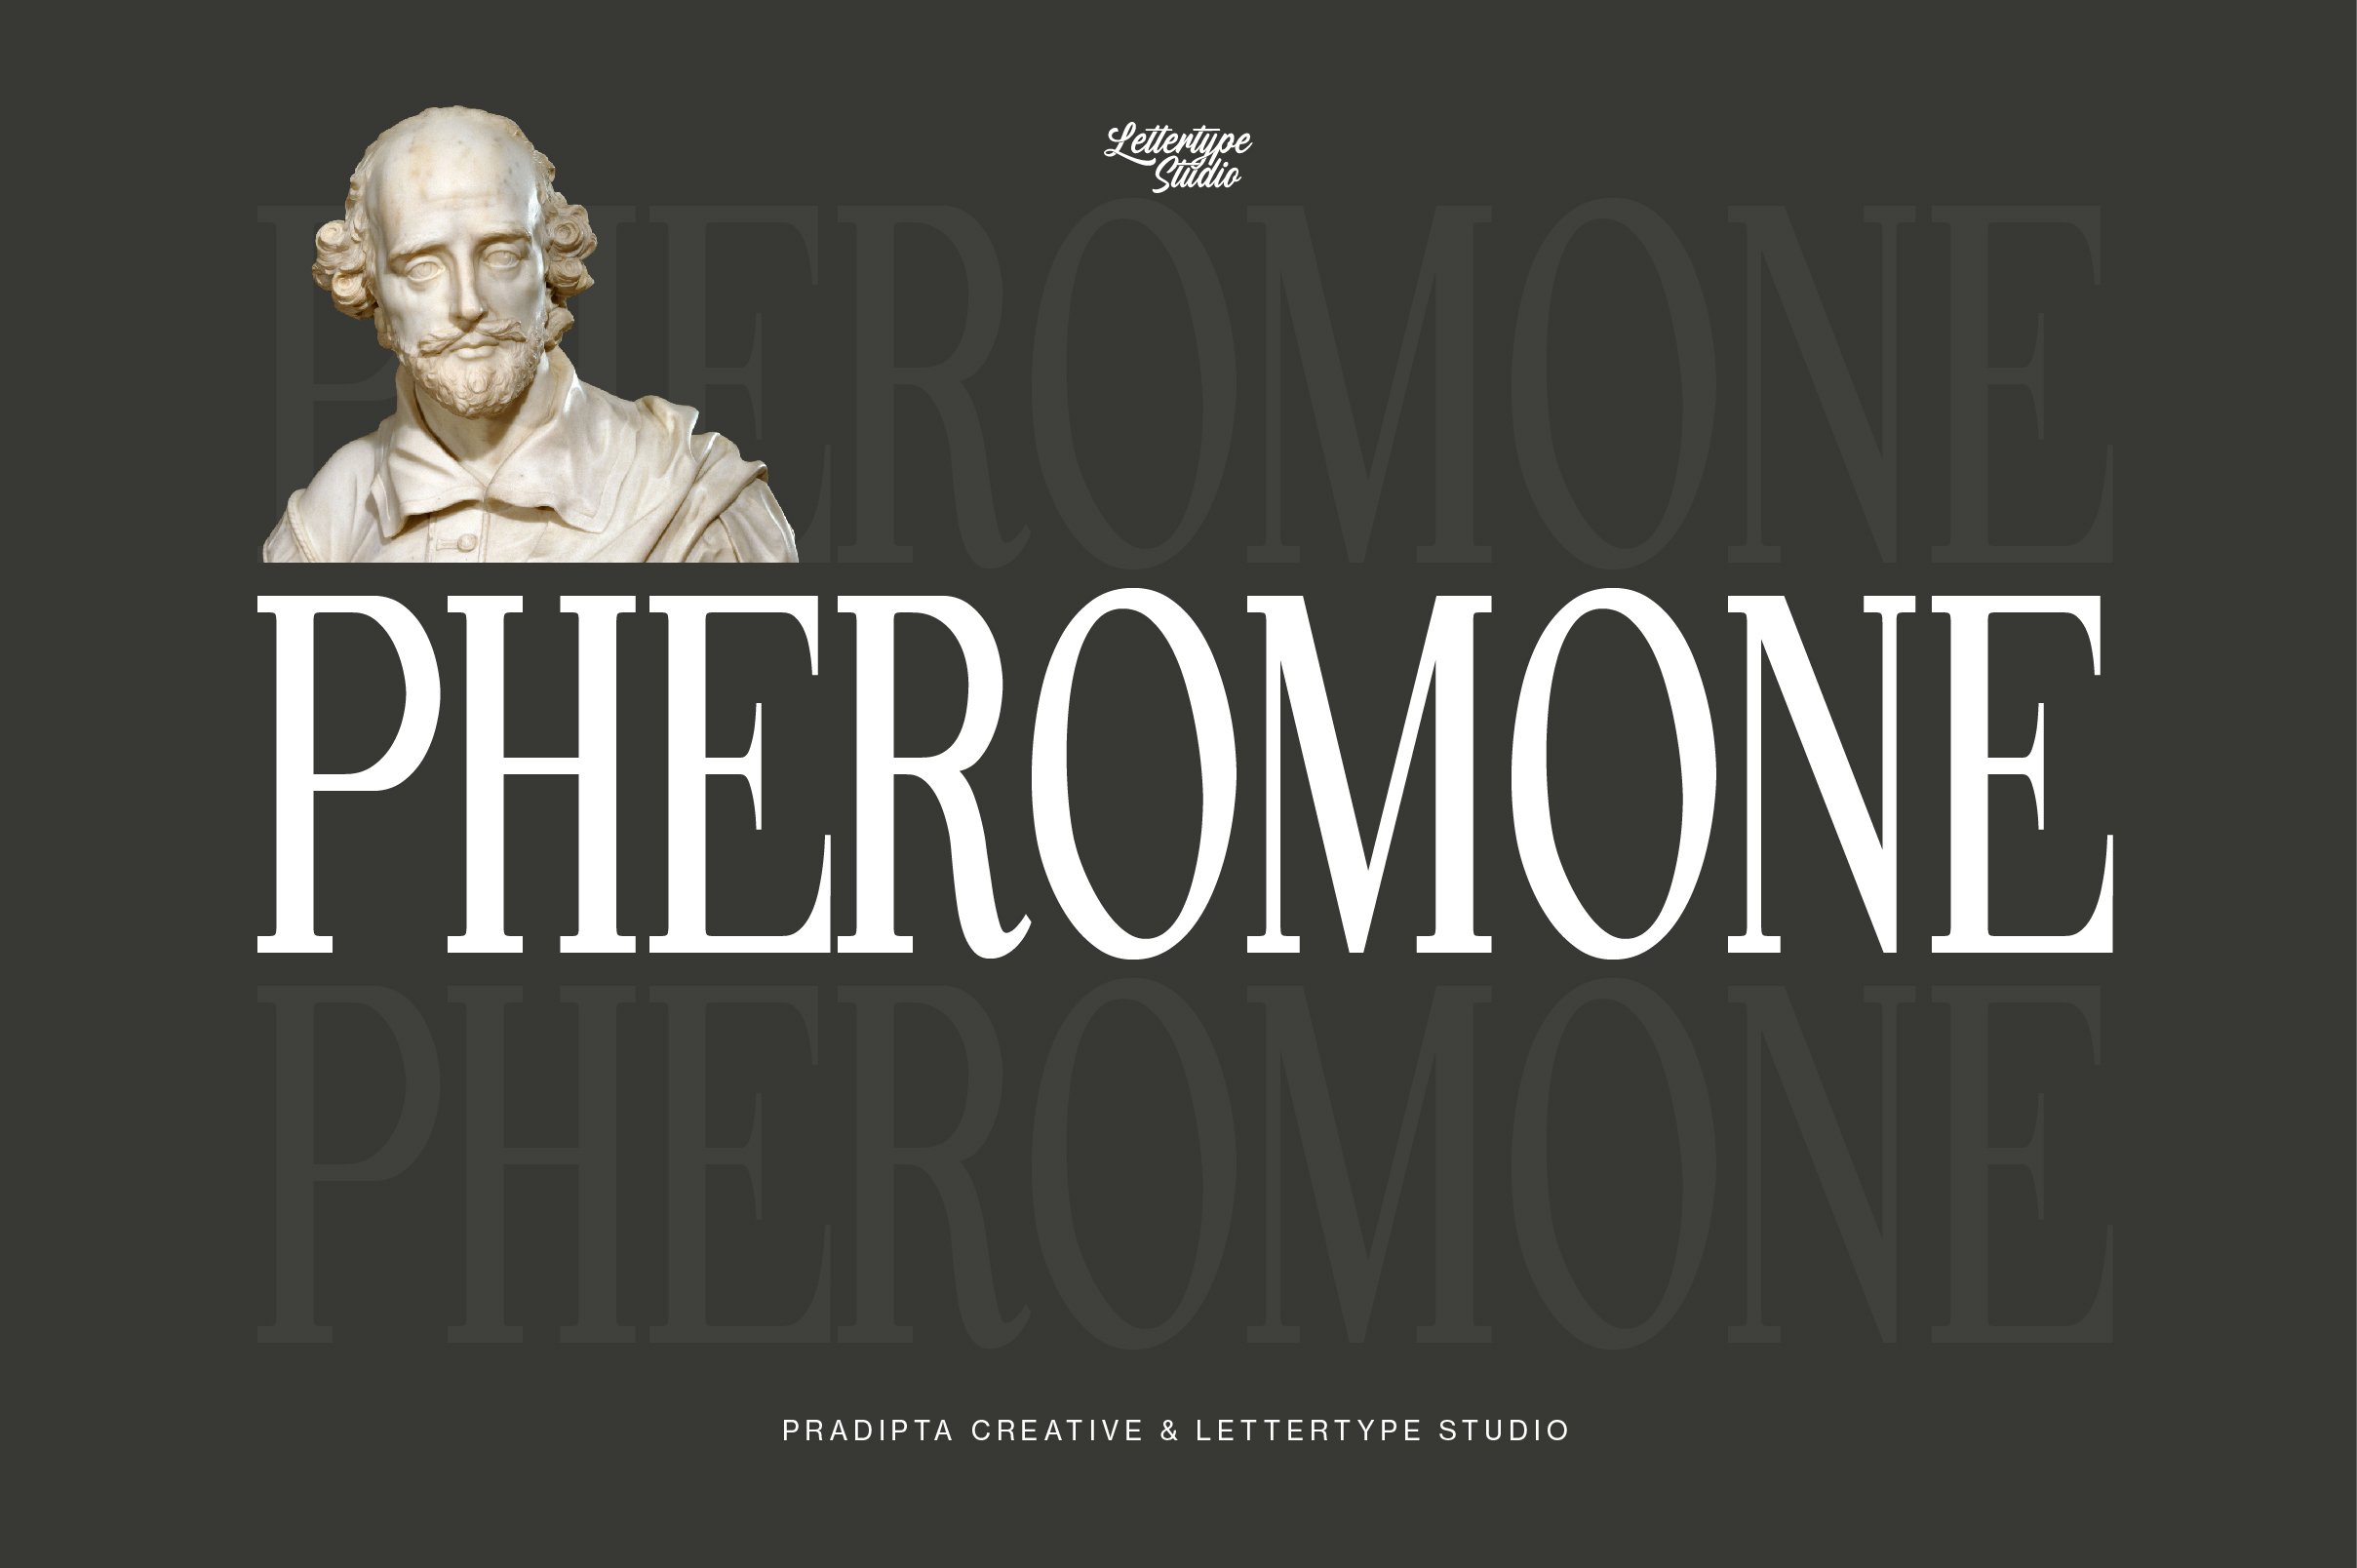 pheromone preview 20 677